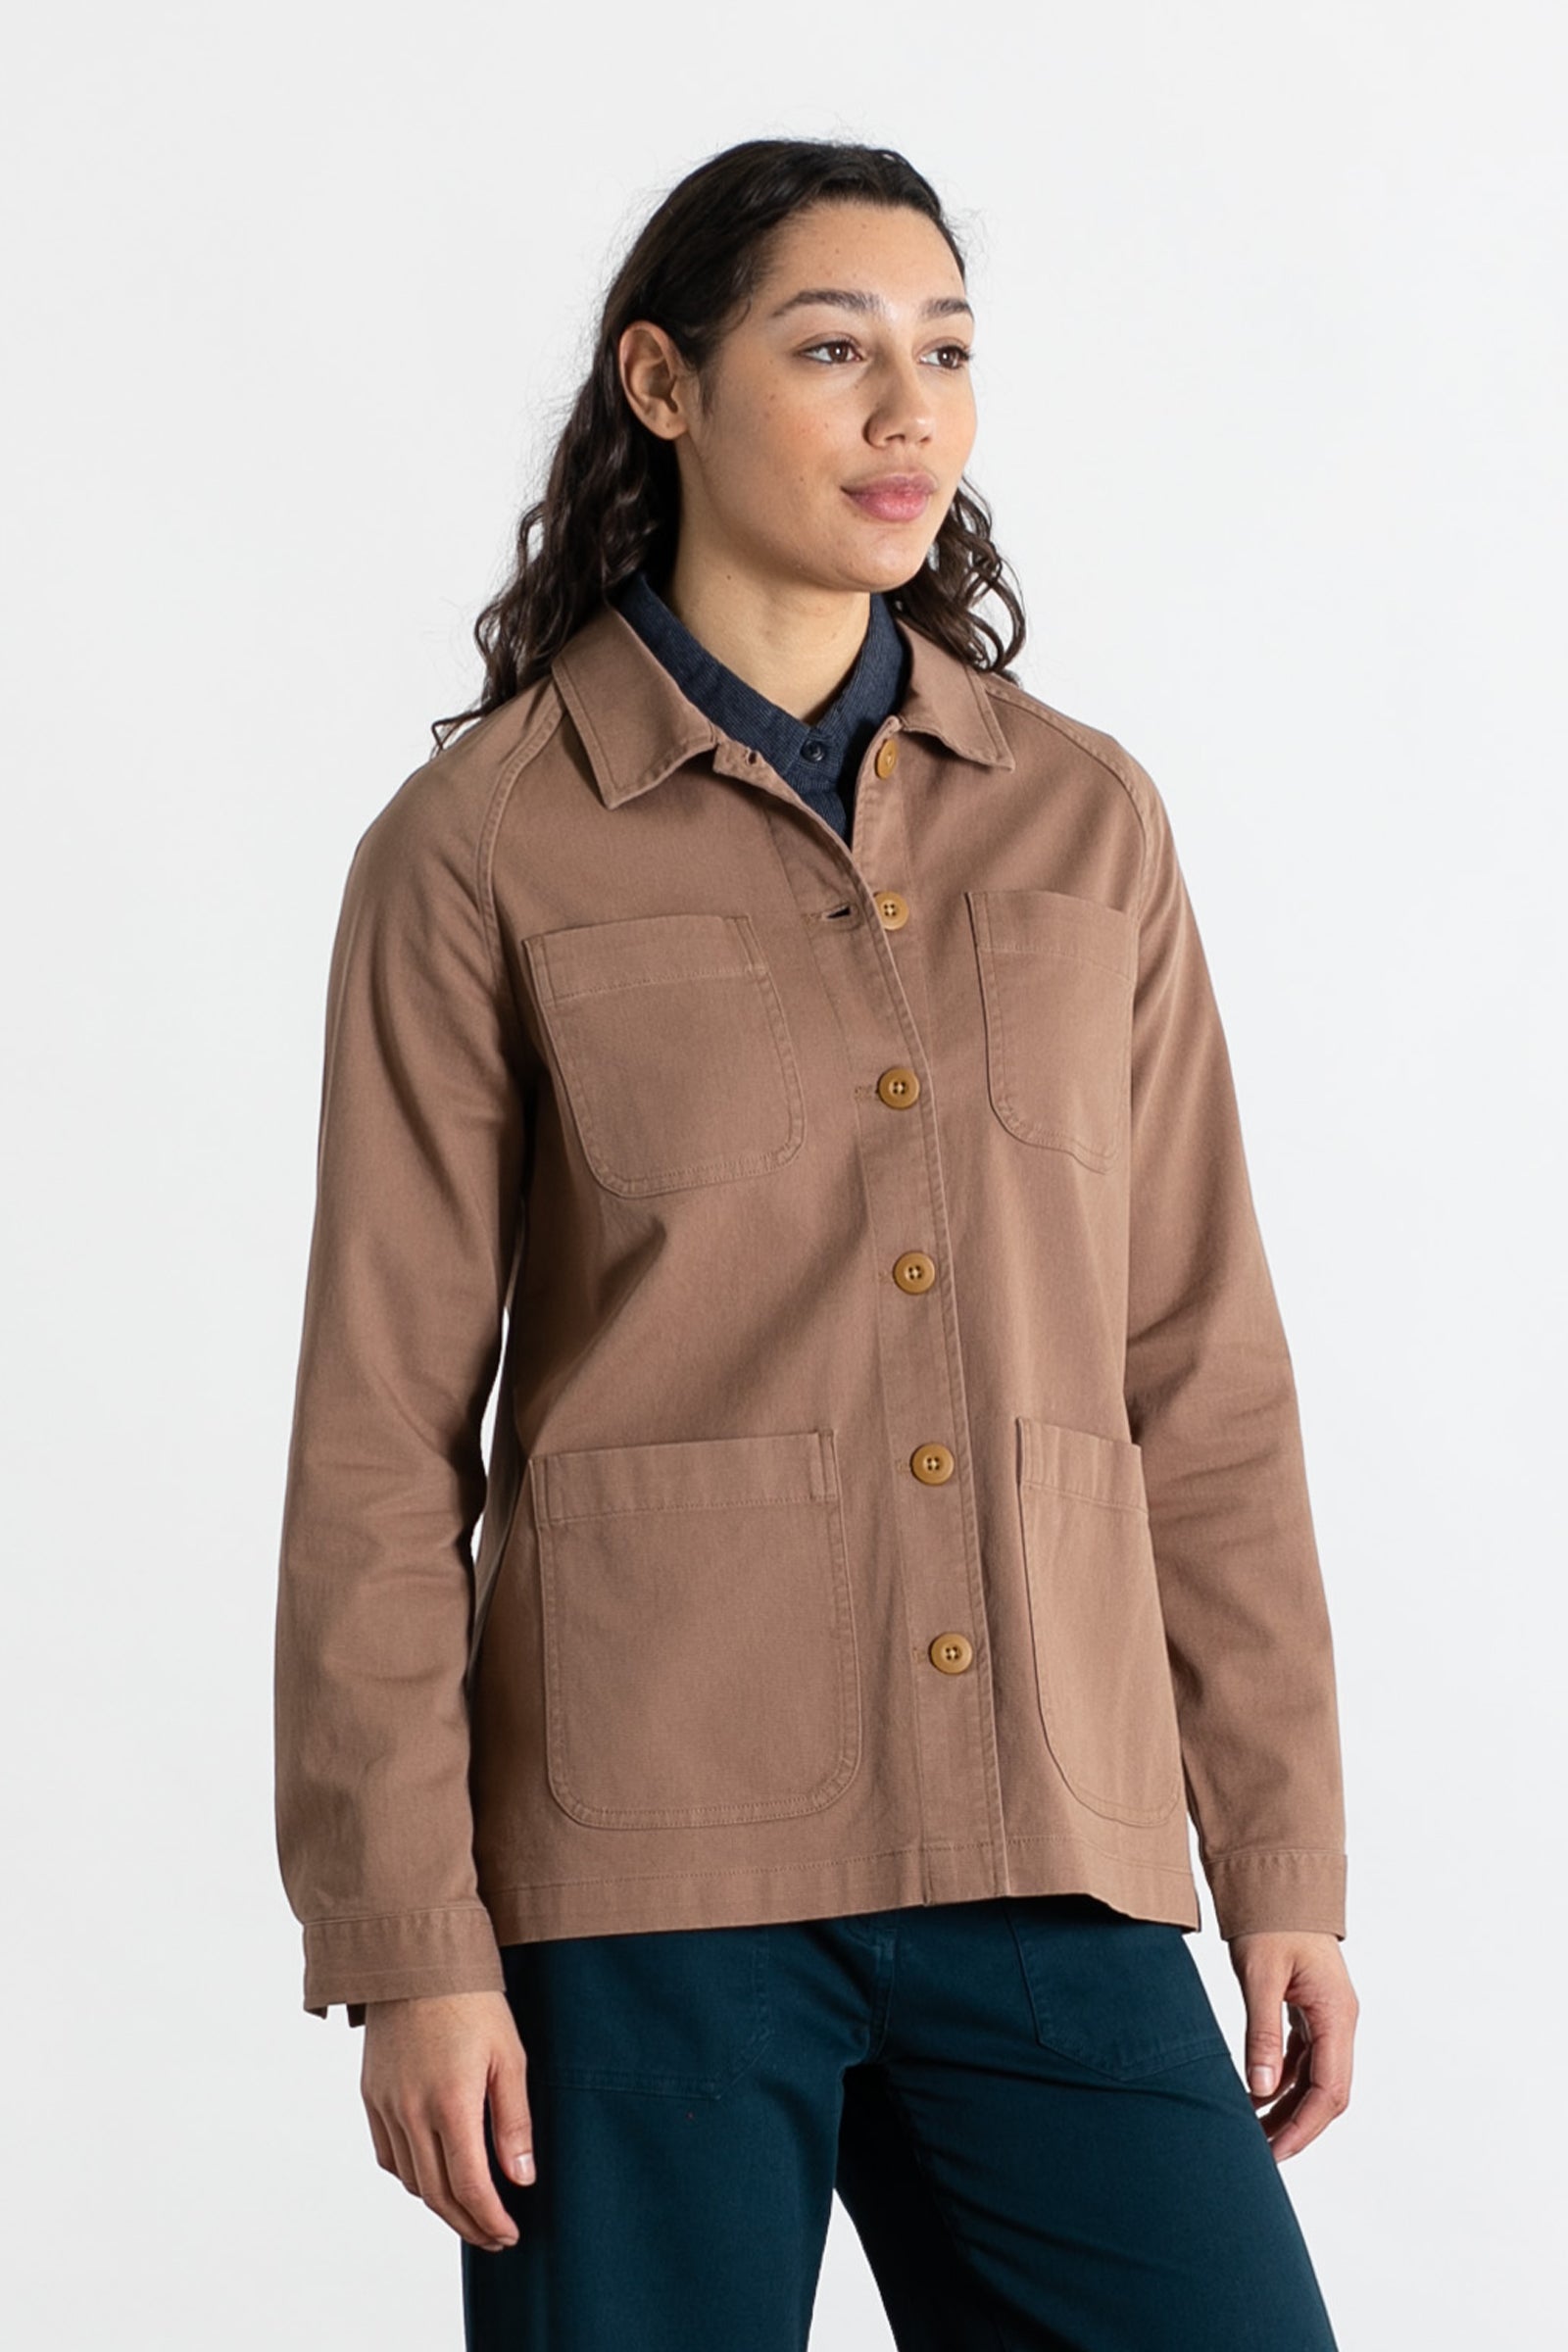 Boardman Chore Coat / Brown